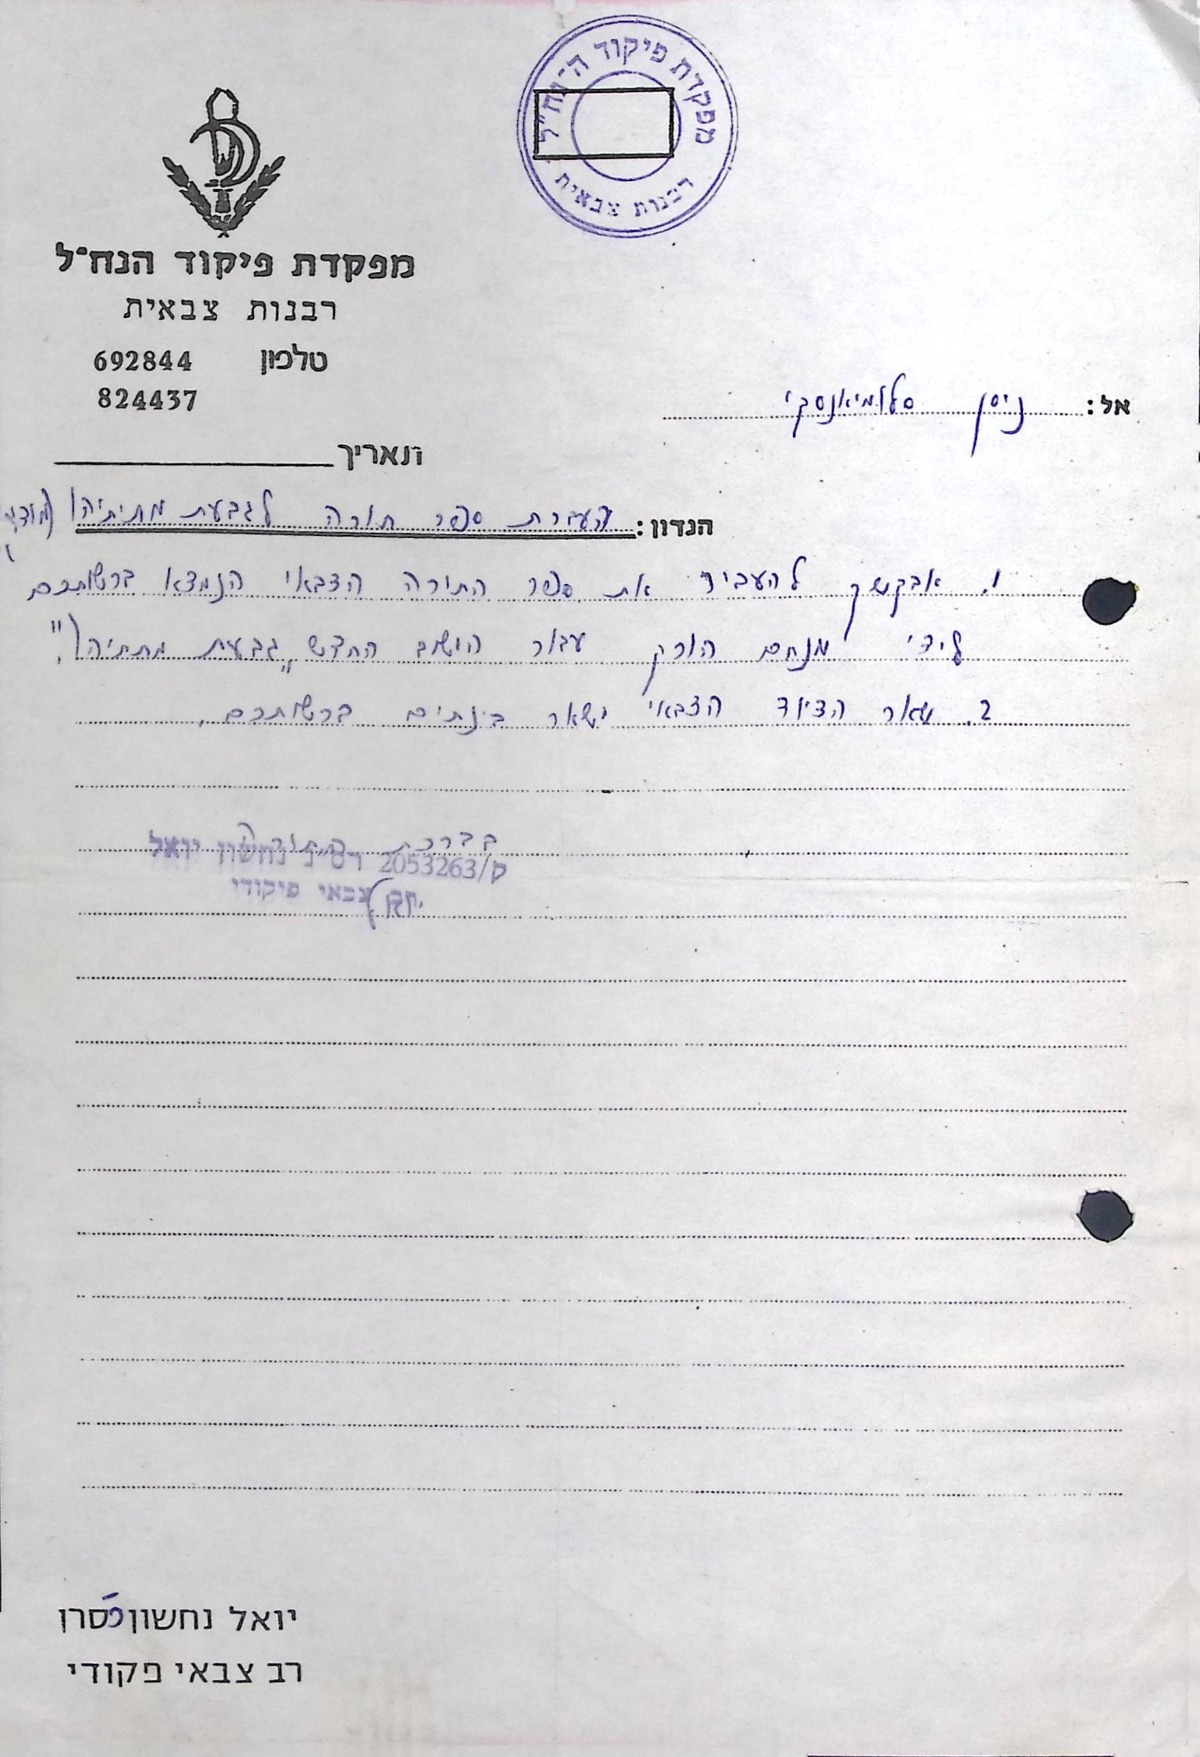 הנחיה להעברת ספר התורה הצבאי לישוב החדש "גבעת מתתיהו" (1977)